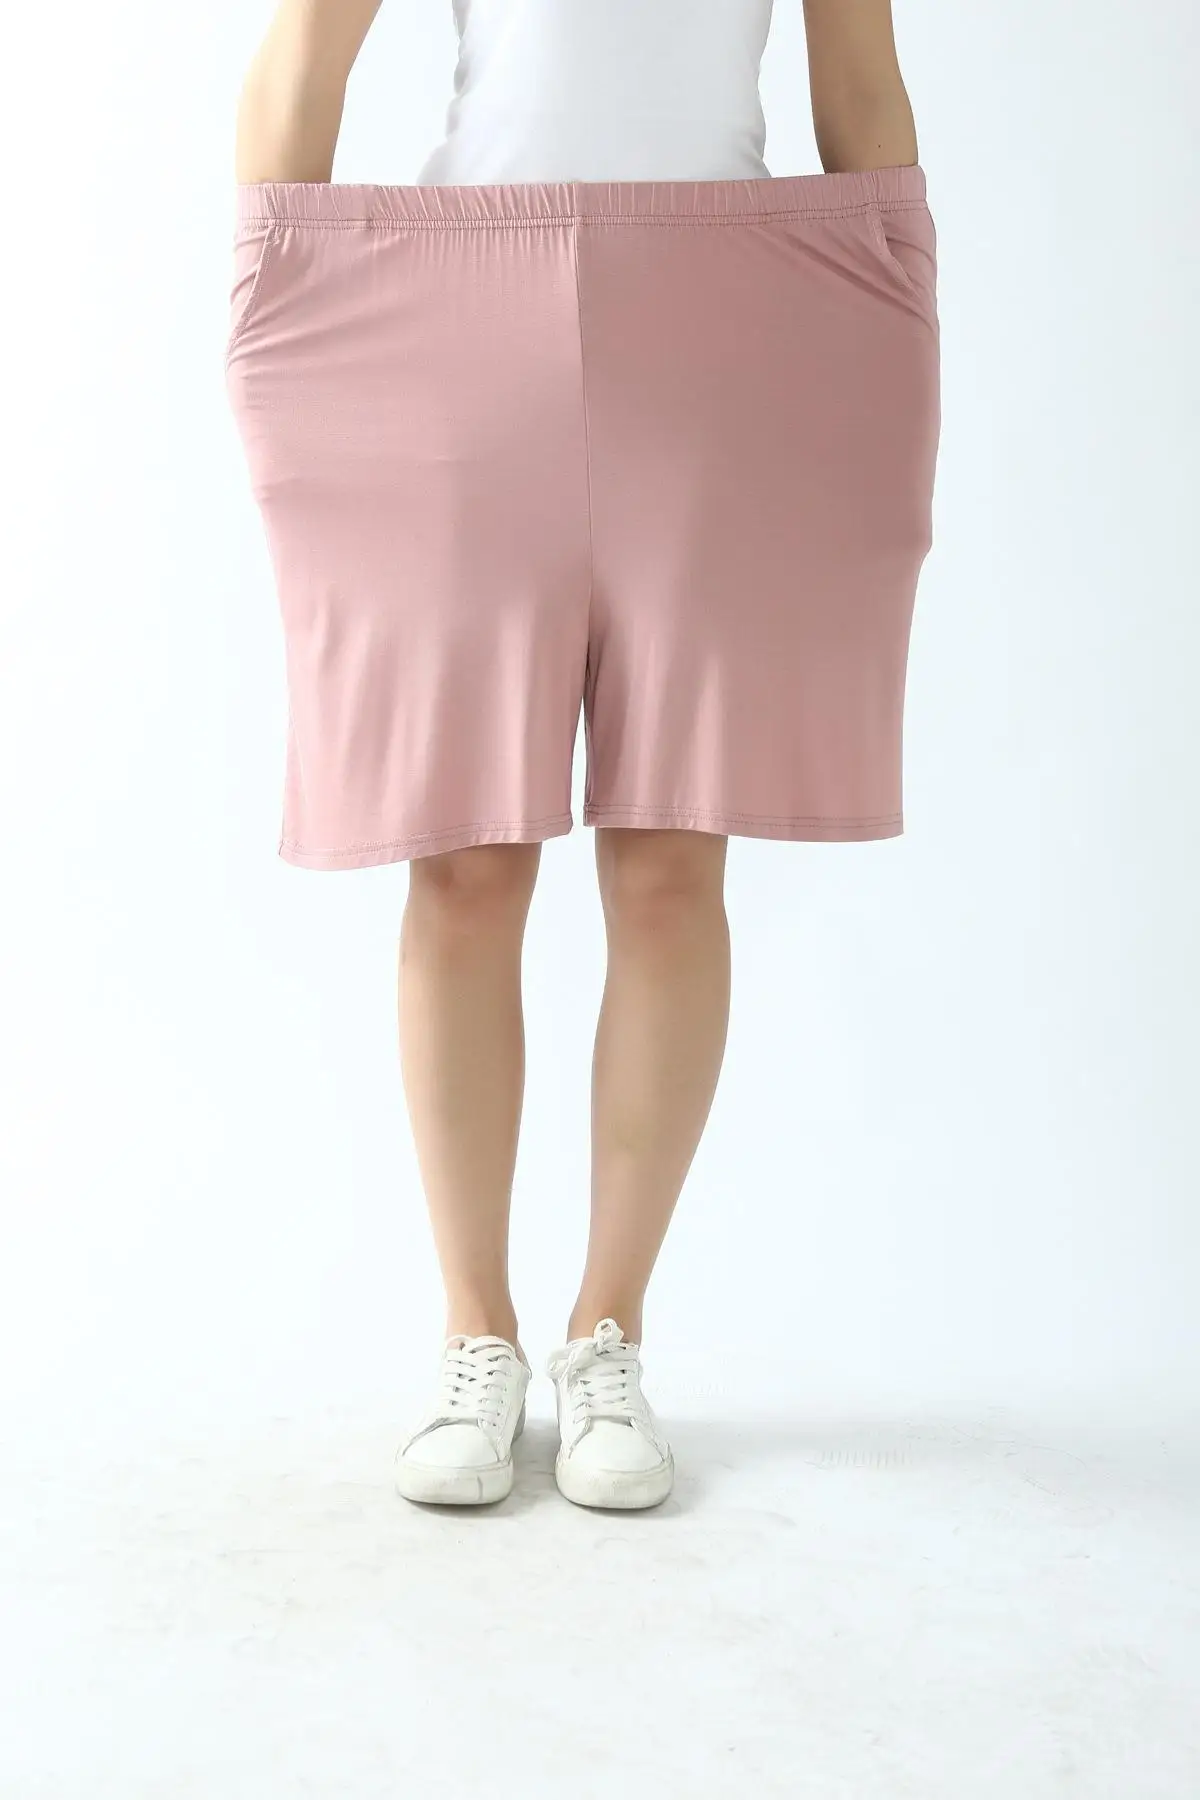 Летняя свободная Пижама, комплект из 2 предметов, Женская хлопковая майка+ шорты, одежда для сна больших размеров, Повседневная Домашняя одежда, пижама 3XL-7XL - Цвет: Shorts 1